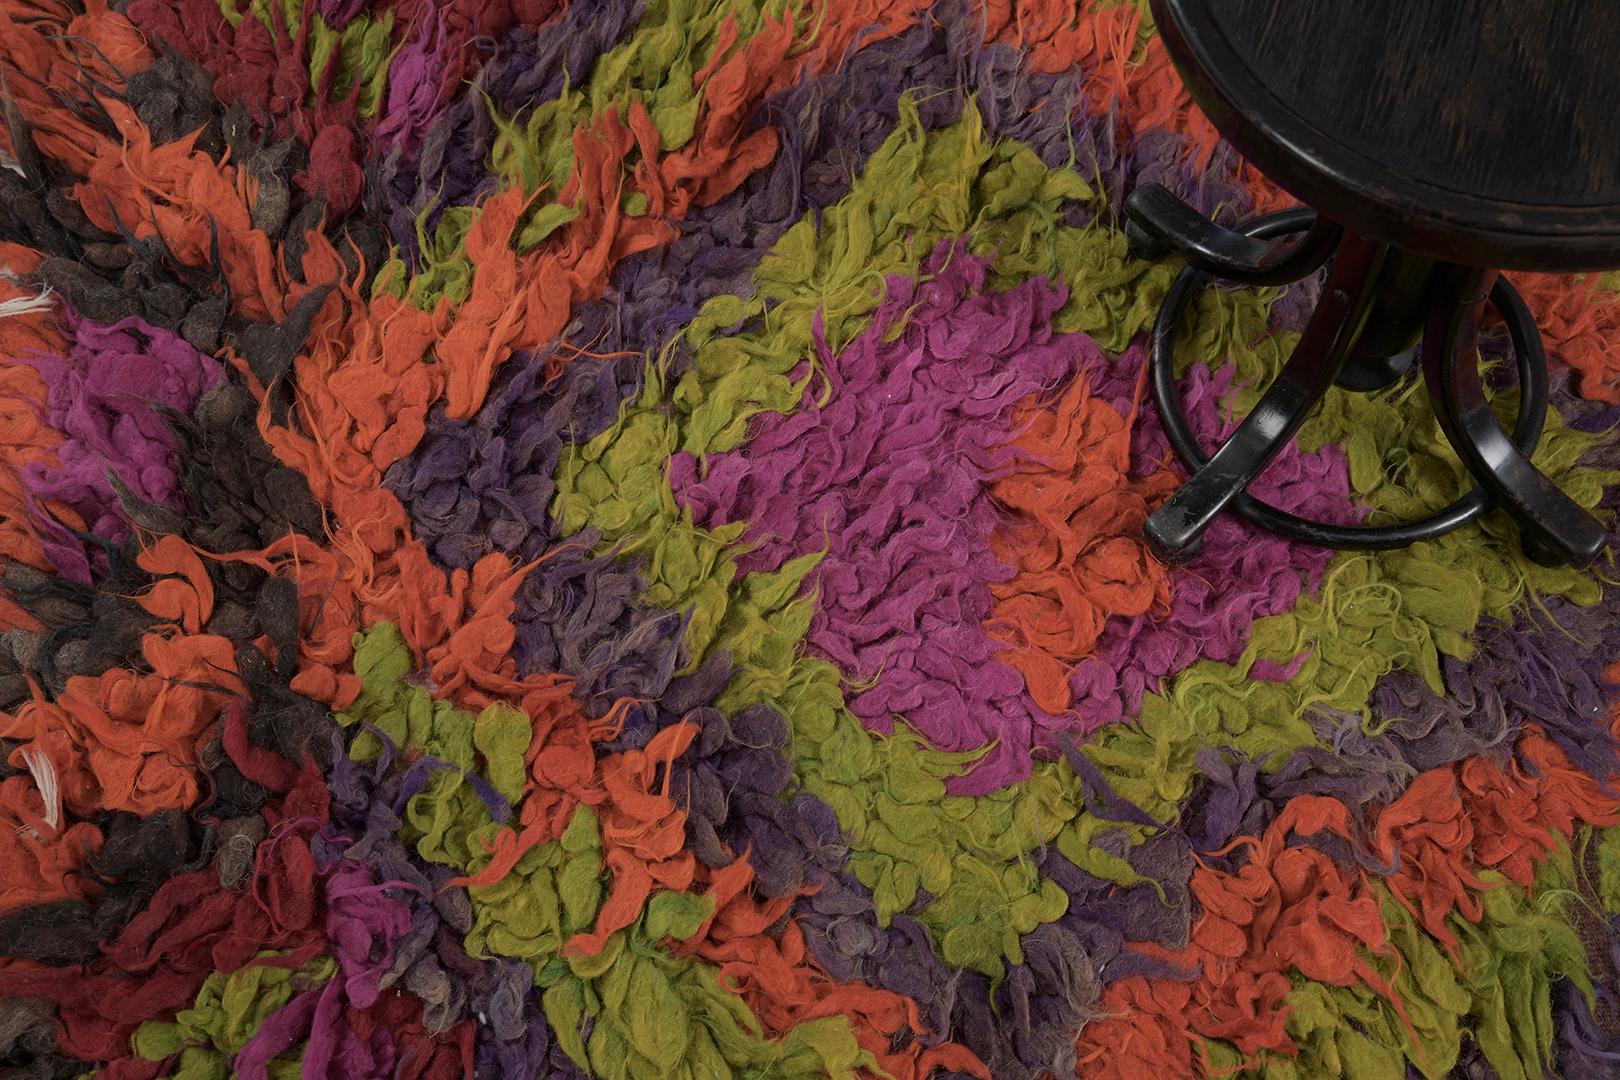 Ein bemerkenswerter türkisch-anatolischer Tulu-Teppich im Vintage-Stil, der Ihren Raum mit seinen lebhaften Farben zum Strahlen bringt. Die lebhafte Stimmung, die dieser exquisite Teppich vermittelt, ist geprägt von den vielfältigen Schattierungen